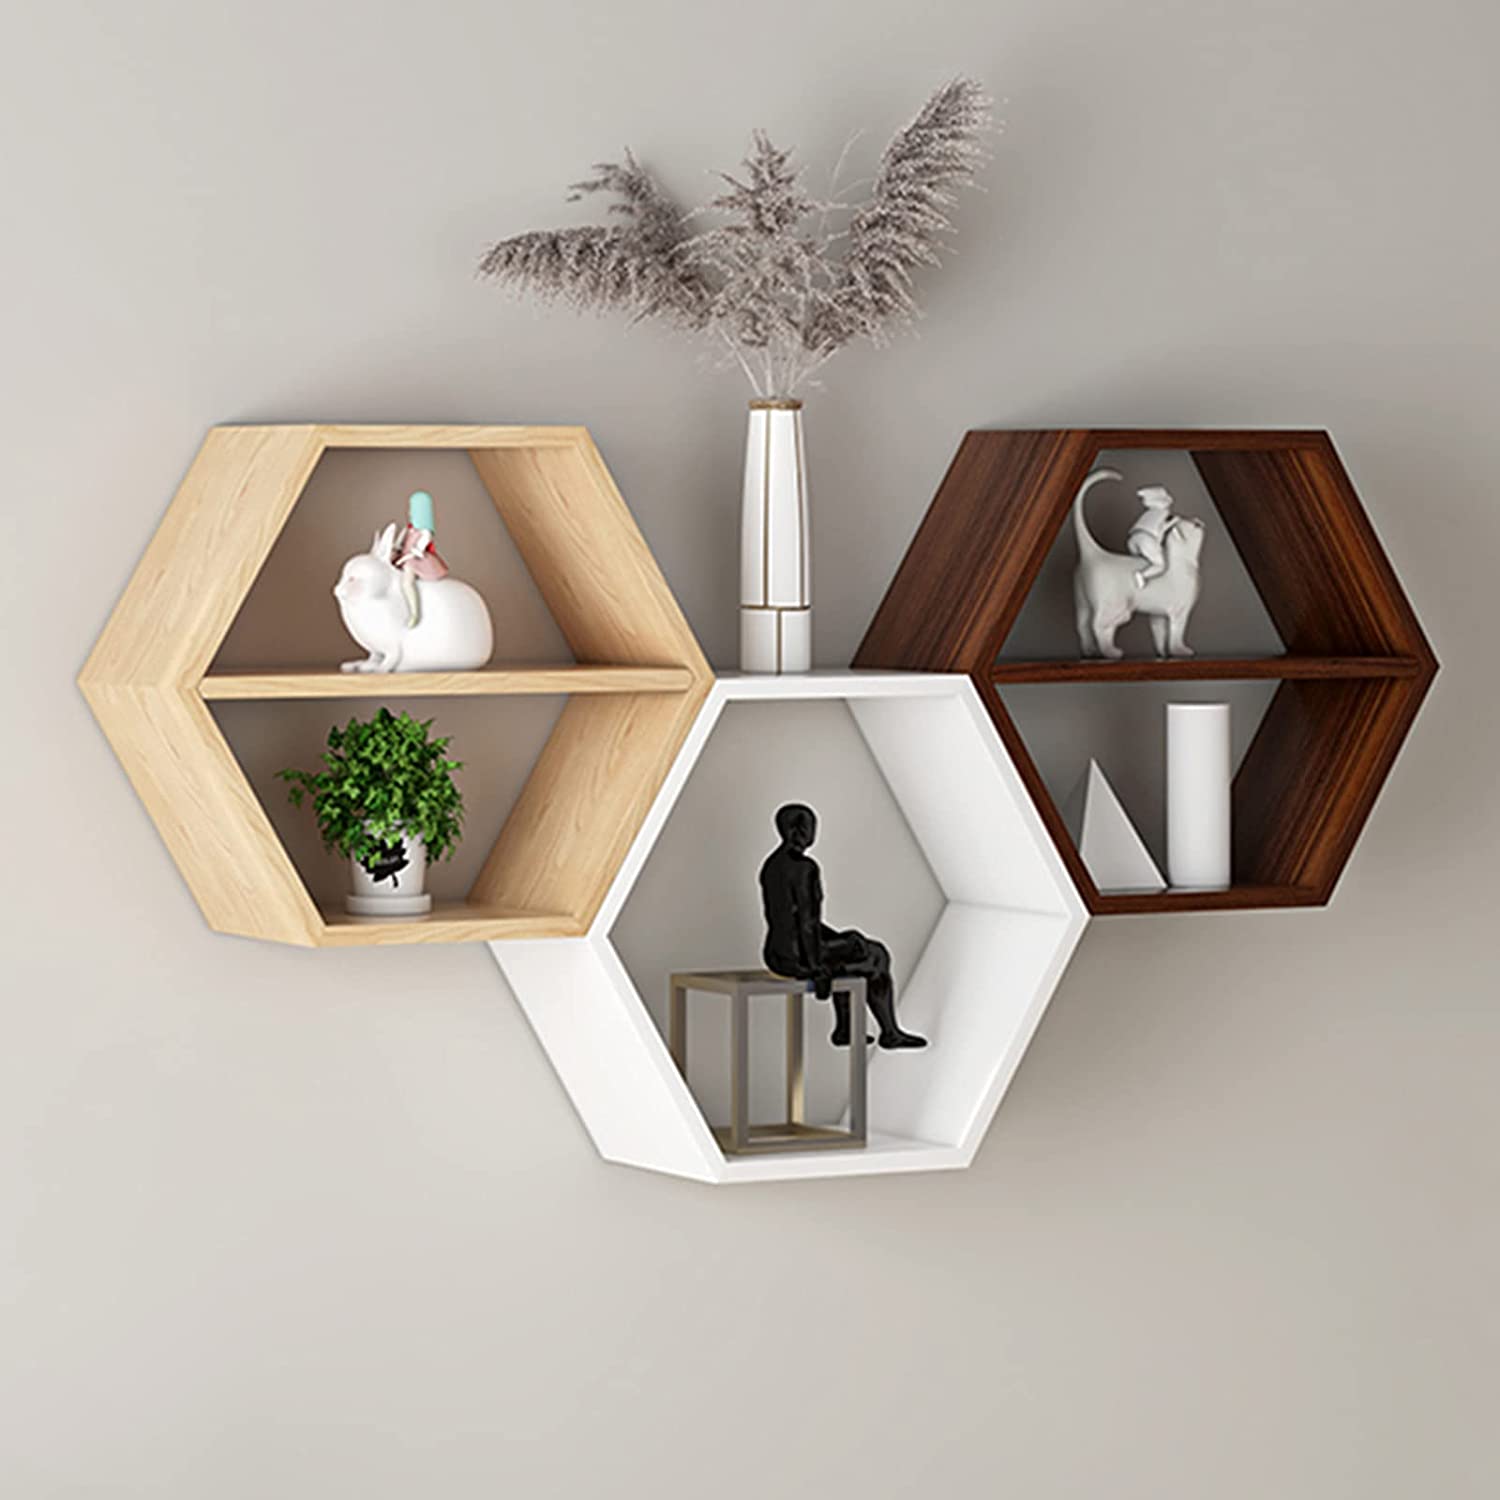 3つの木製六角形フローティングウォールシェルフのセット-装飾的な